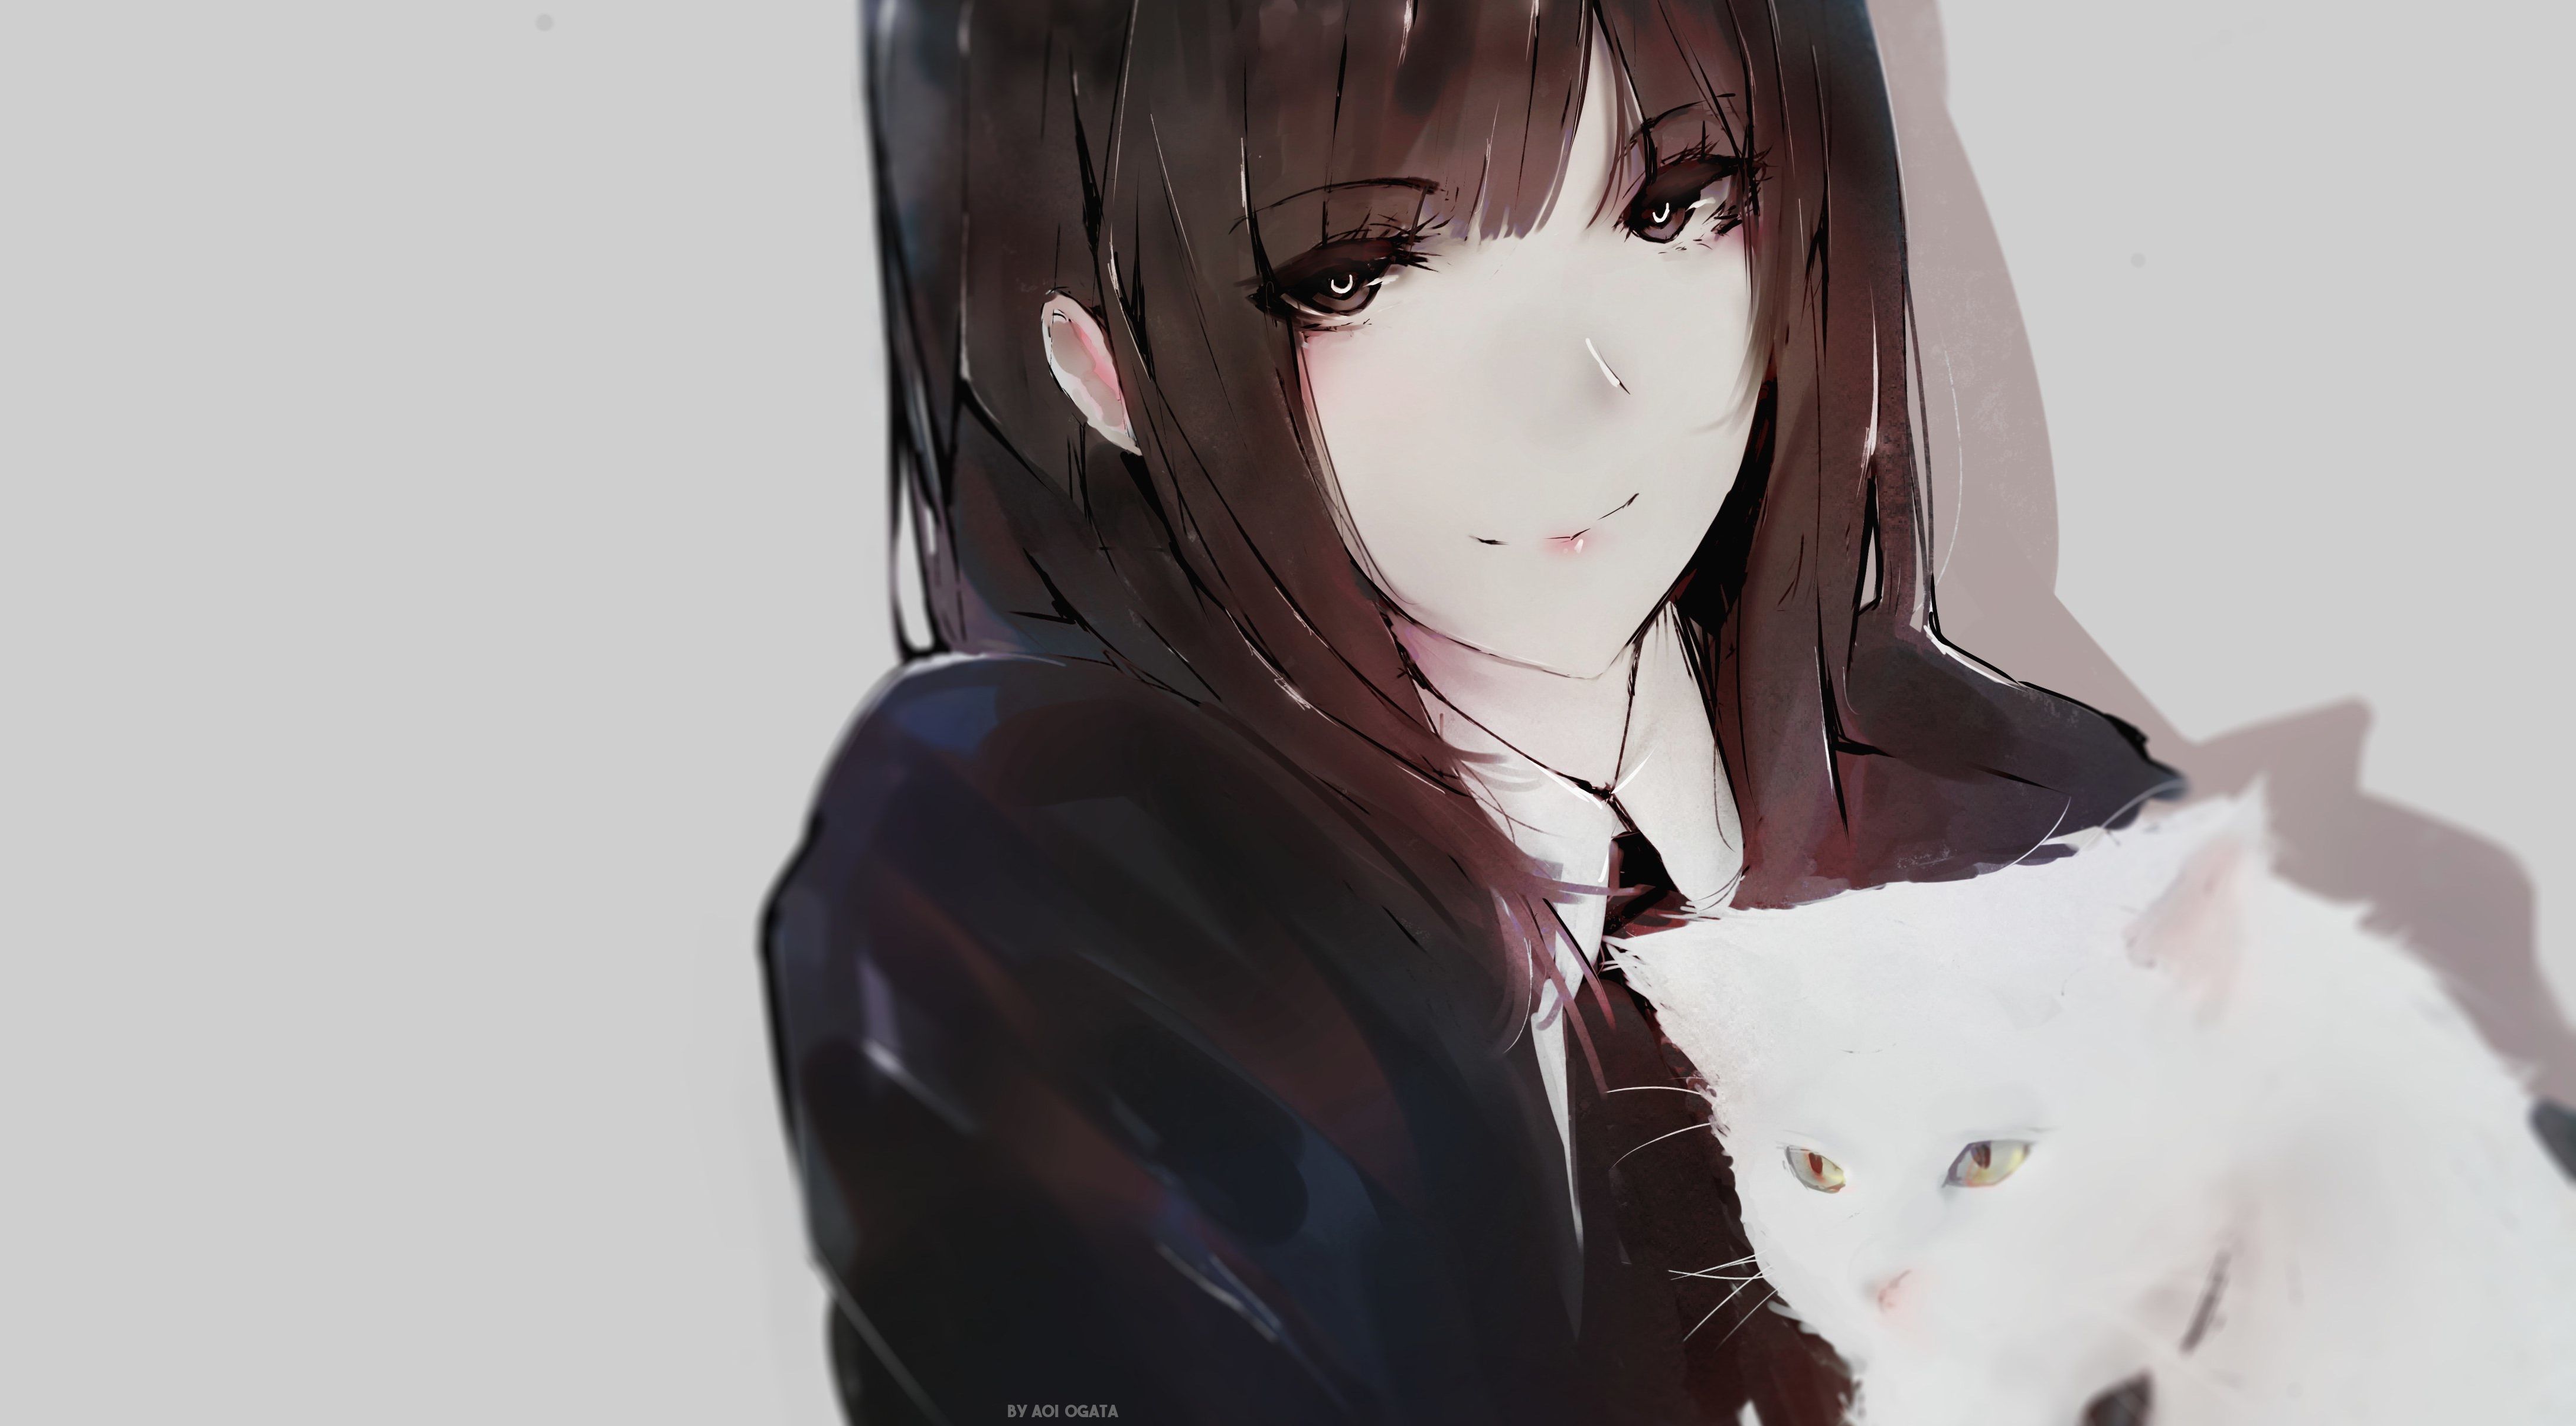 Beautiful anime girl cat ears, eyes, - AI Photo Generator - starryai